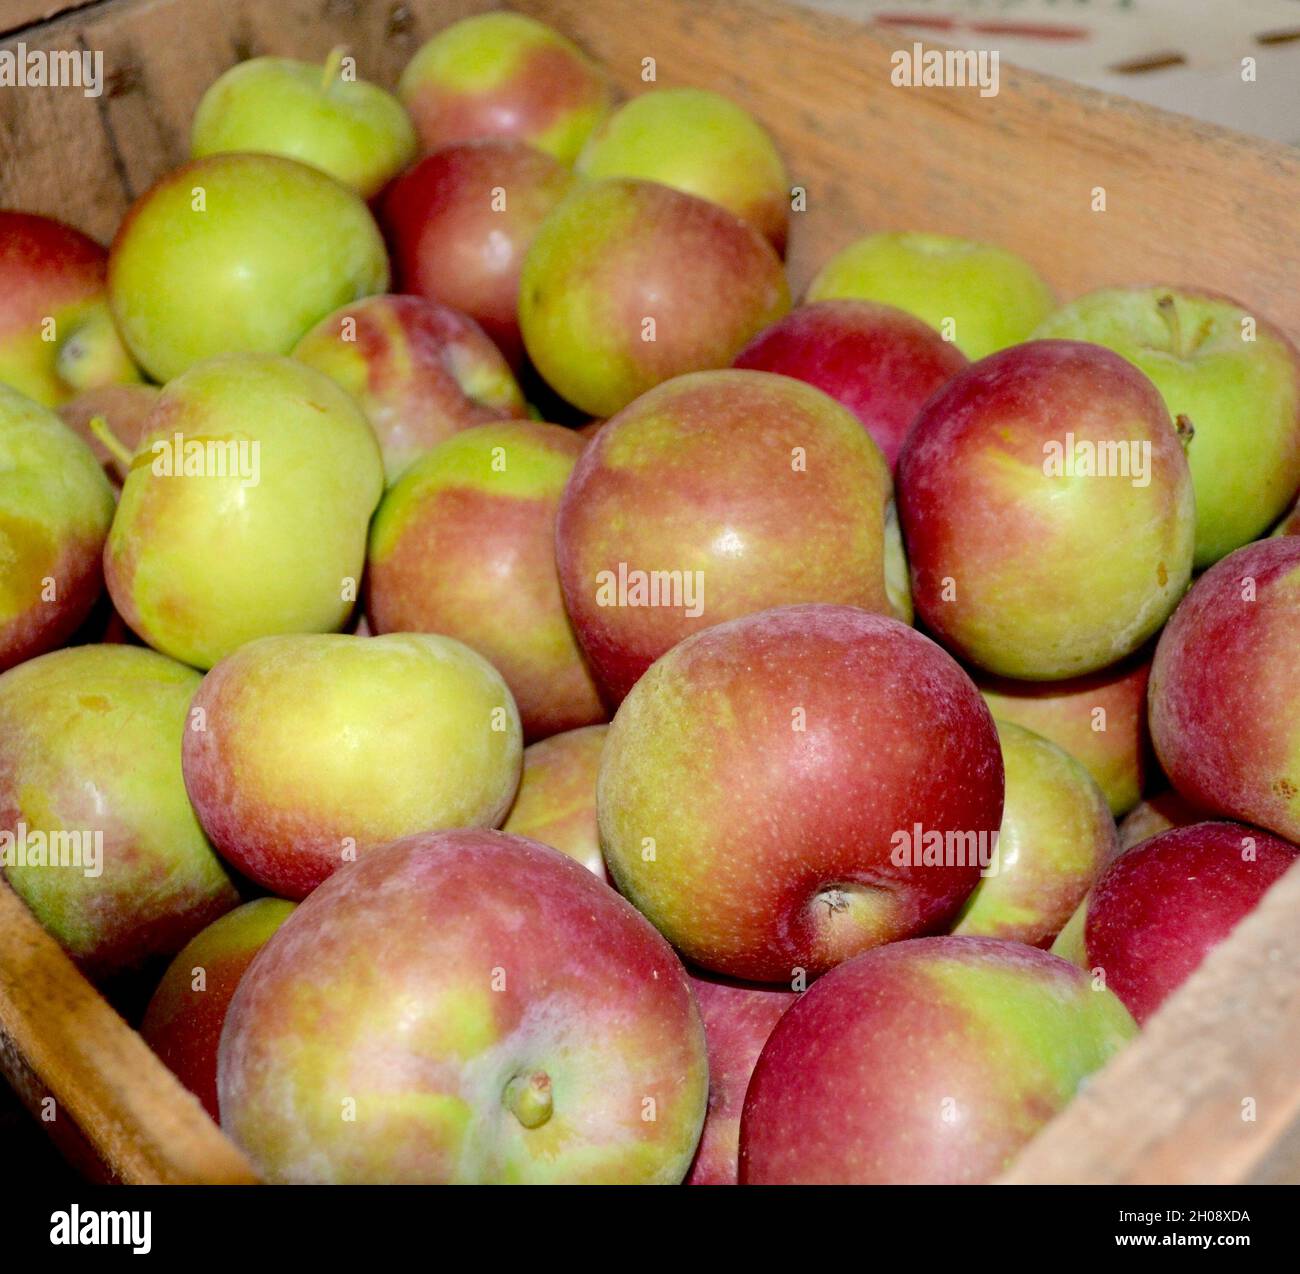 Croccanti mele Macintosh della Hudson Valley di New York spedite in una scatola di legno. Foto Stock